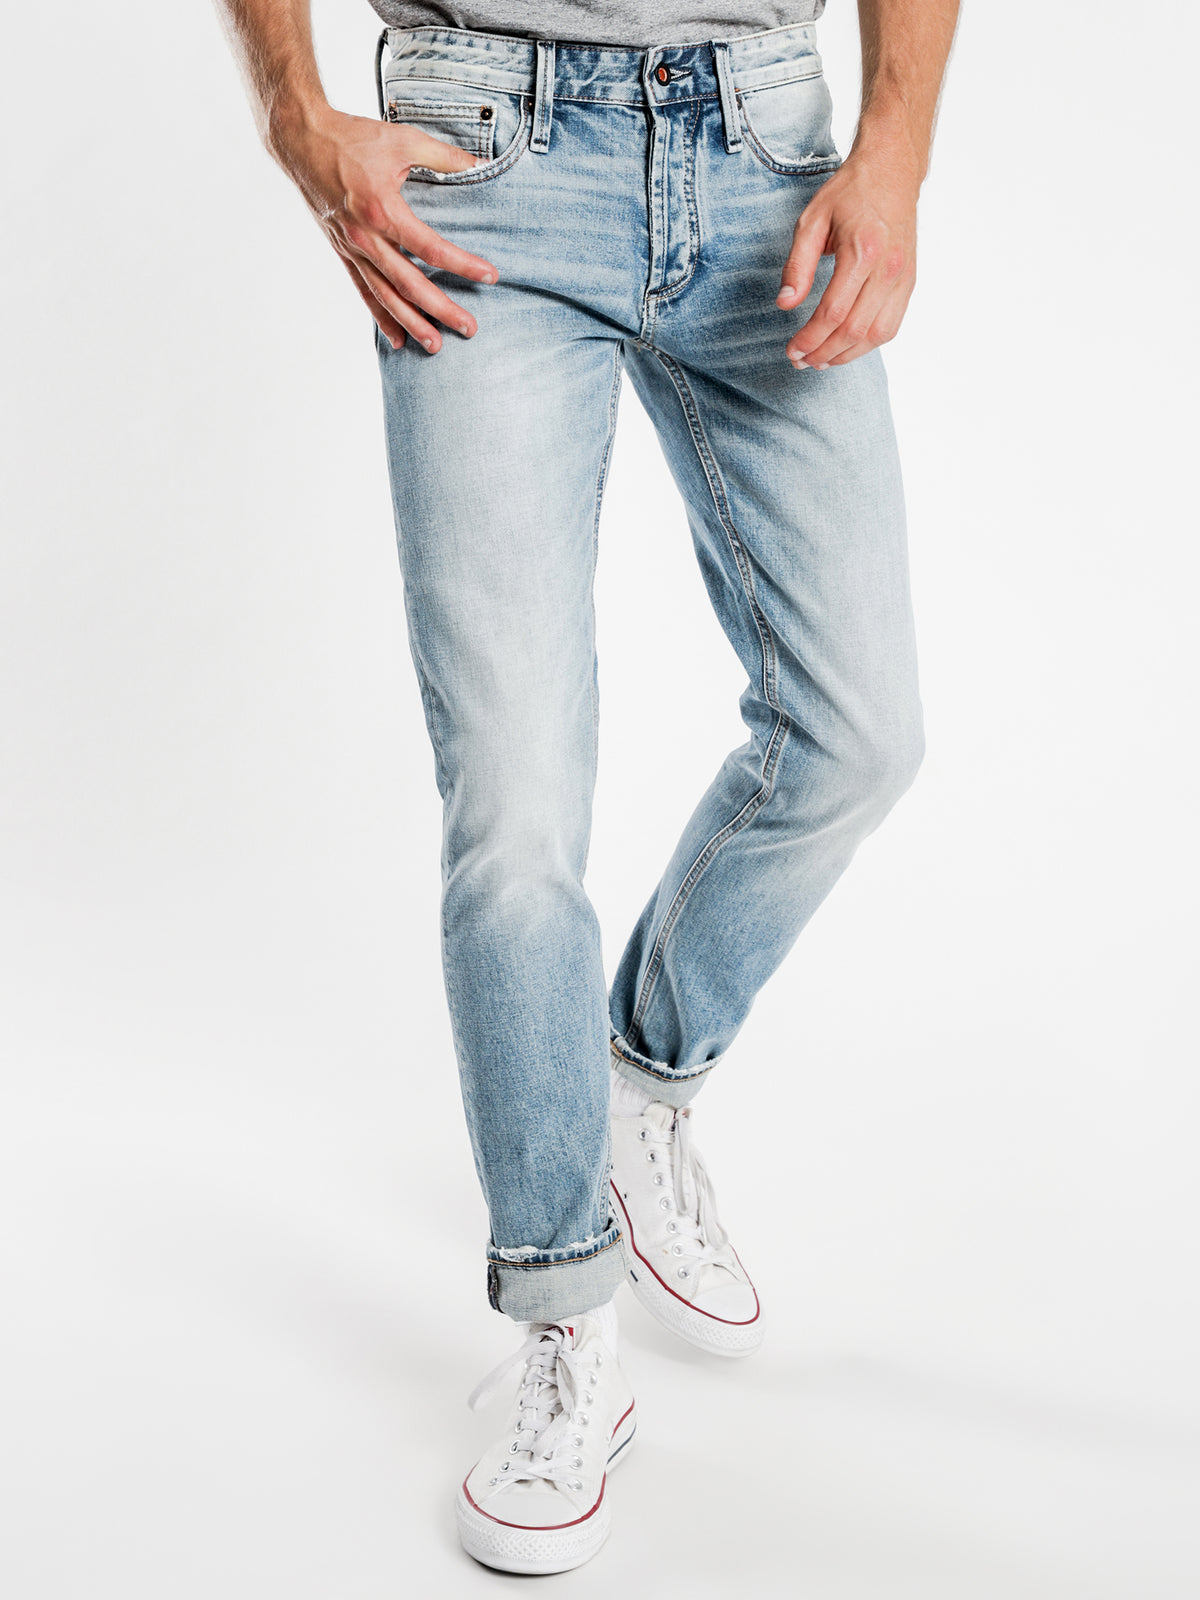 Razor AVBL Slim Jeans in Light Blue Wash Denim